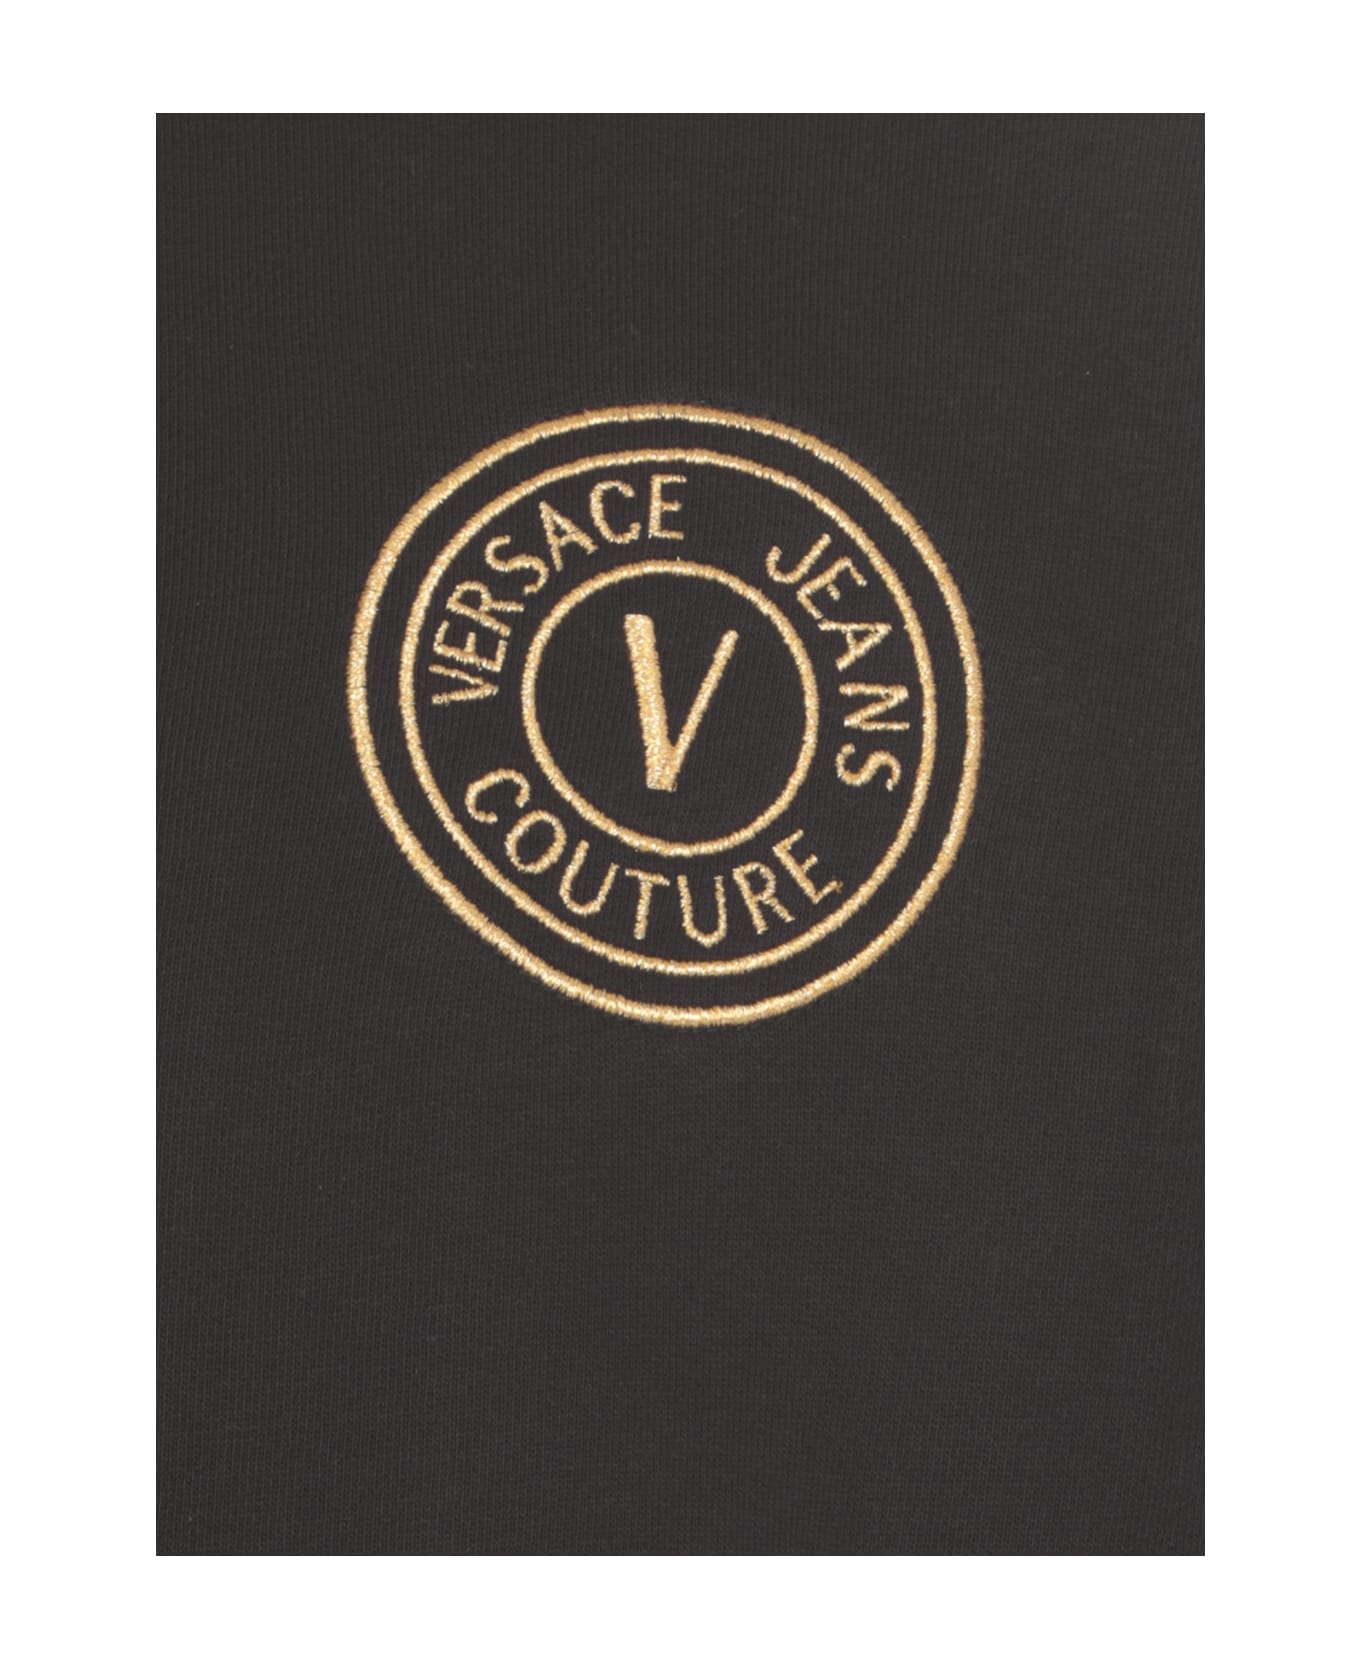 Versace Jeans Couture Vemblem Sweatshirt - Black カーディガン